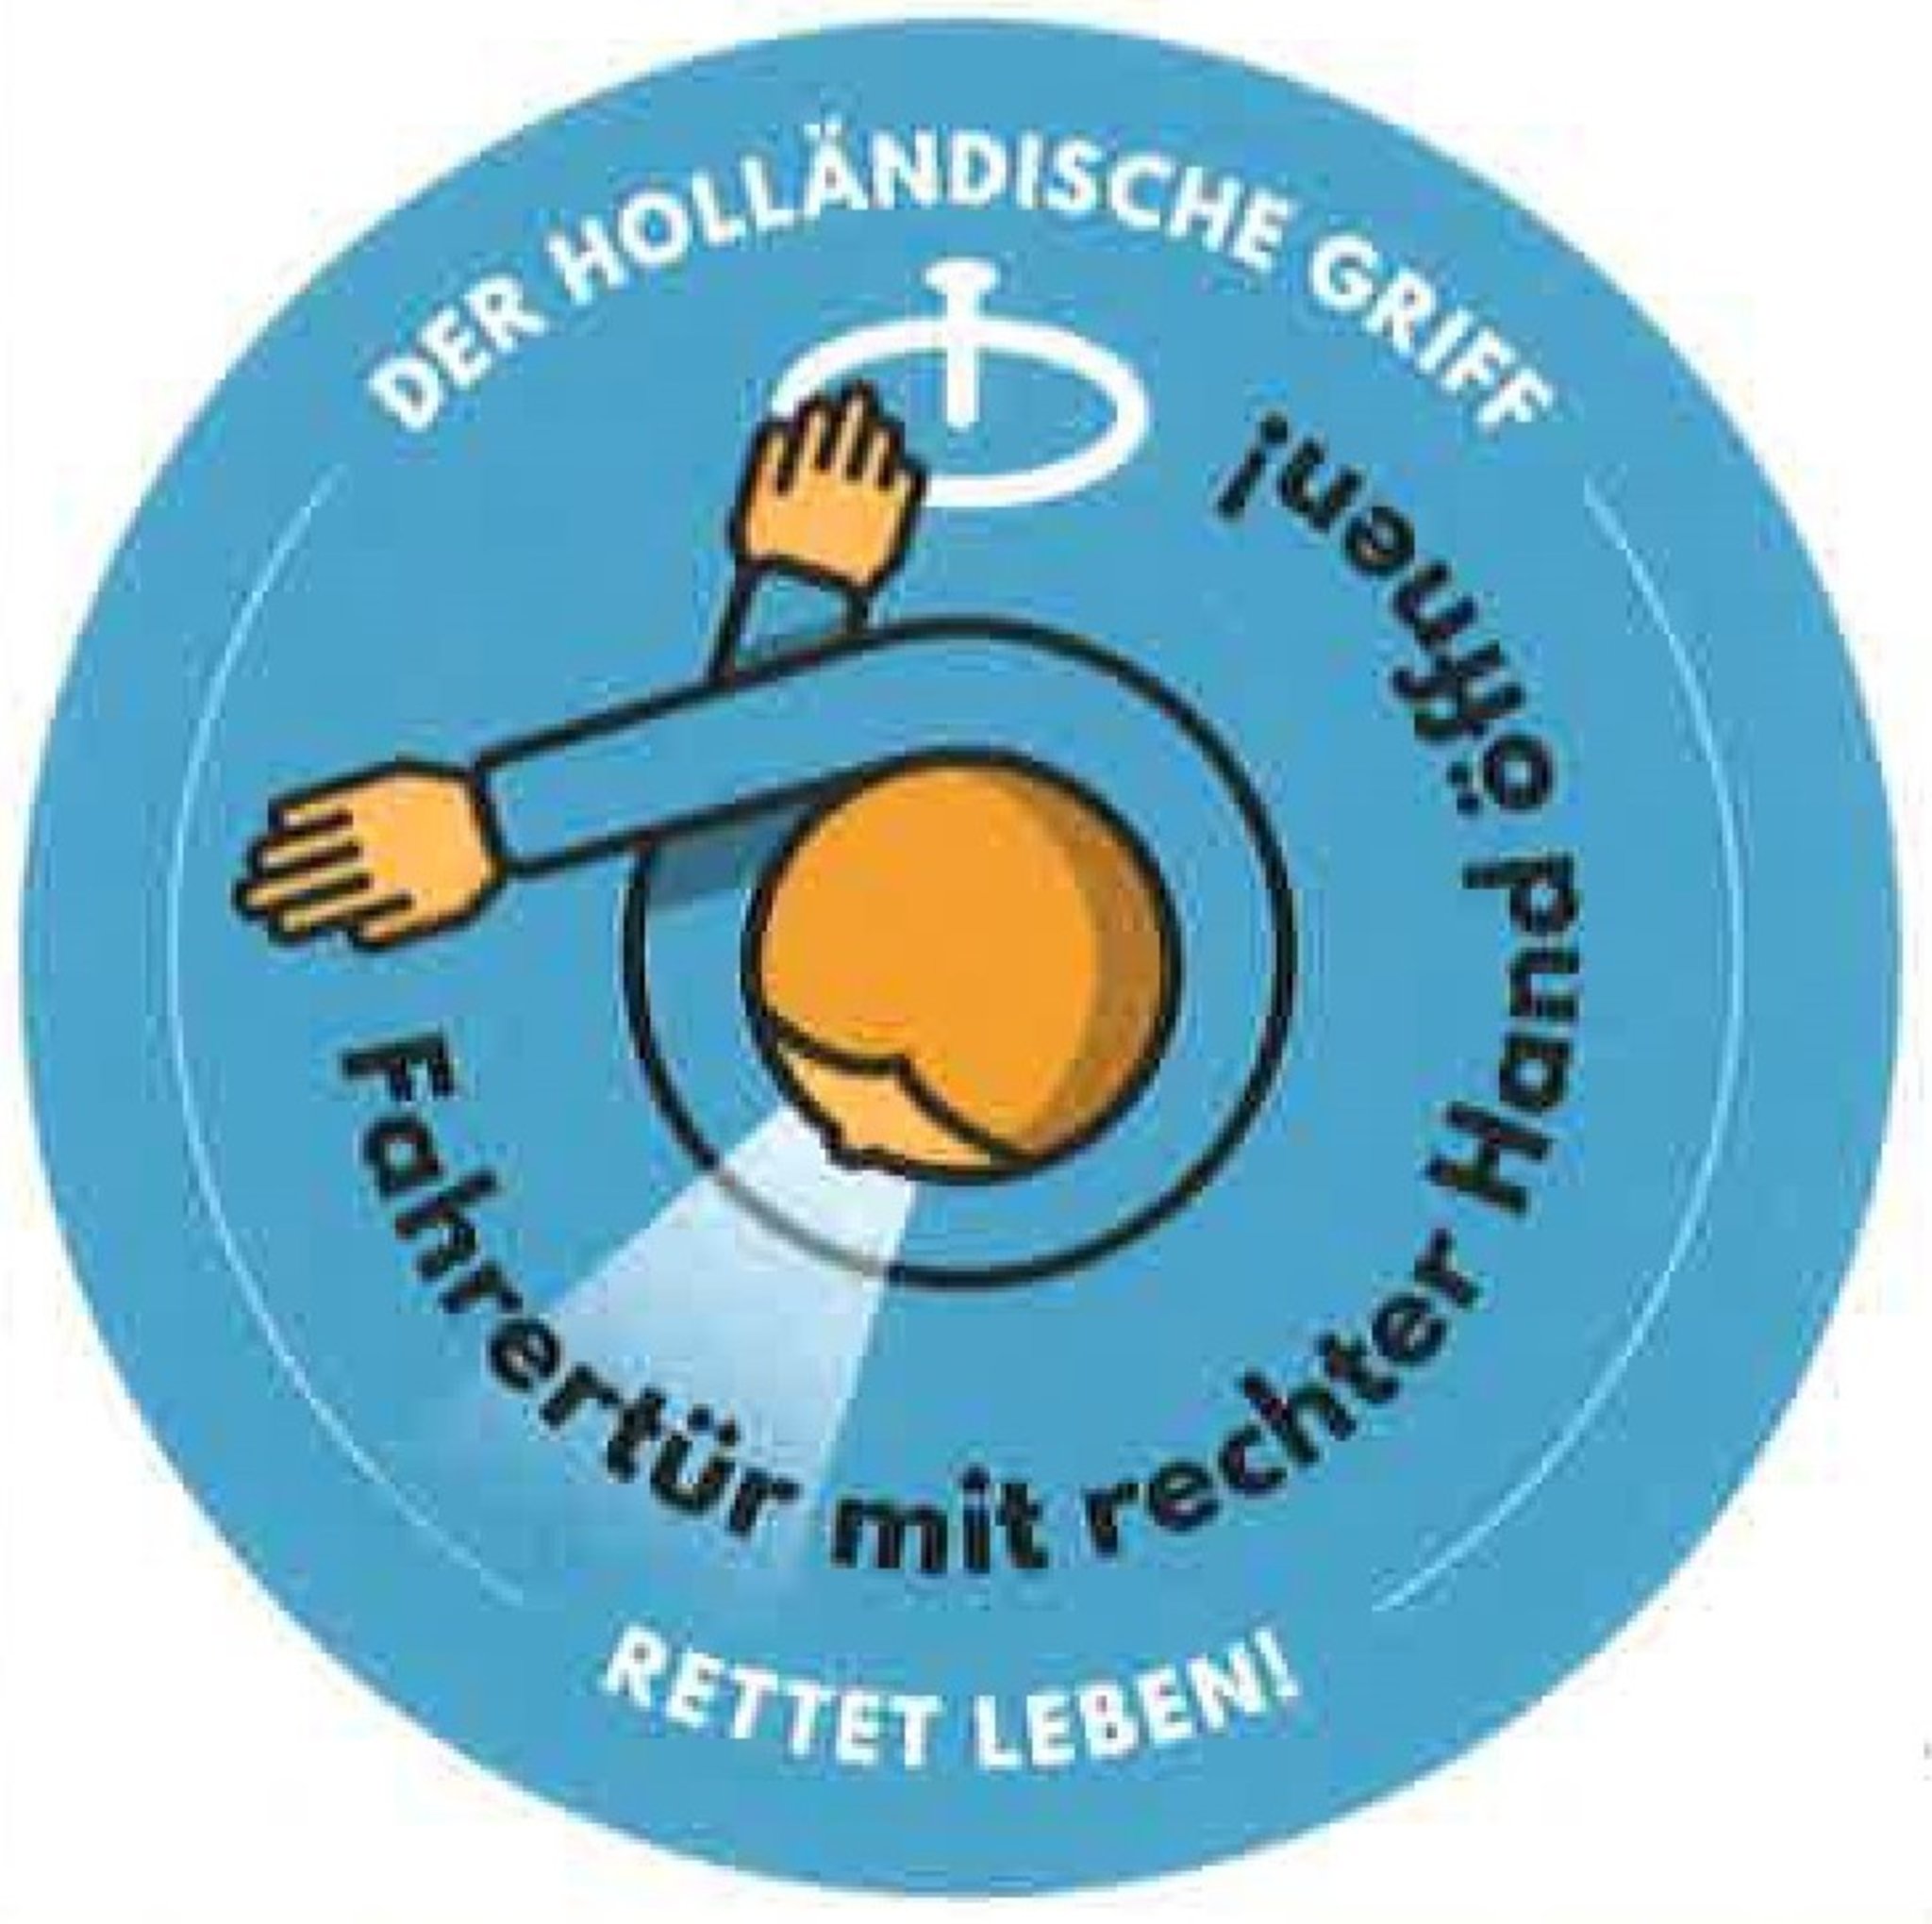 Deutsch – German – de at ch – Dutch Reach Project